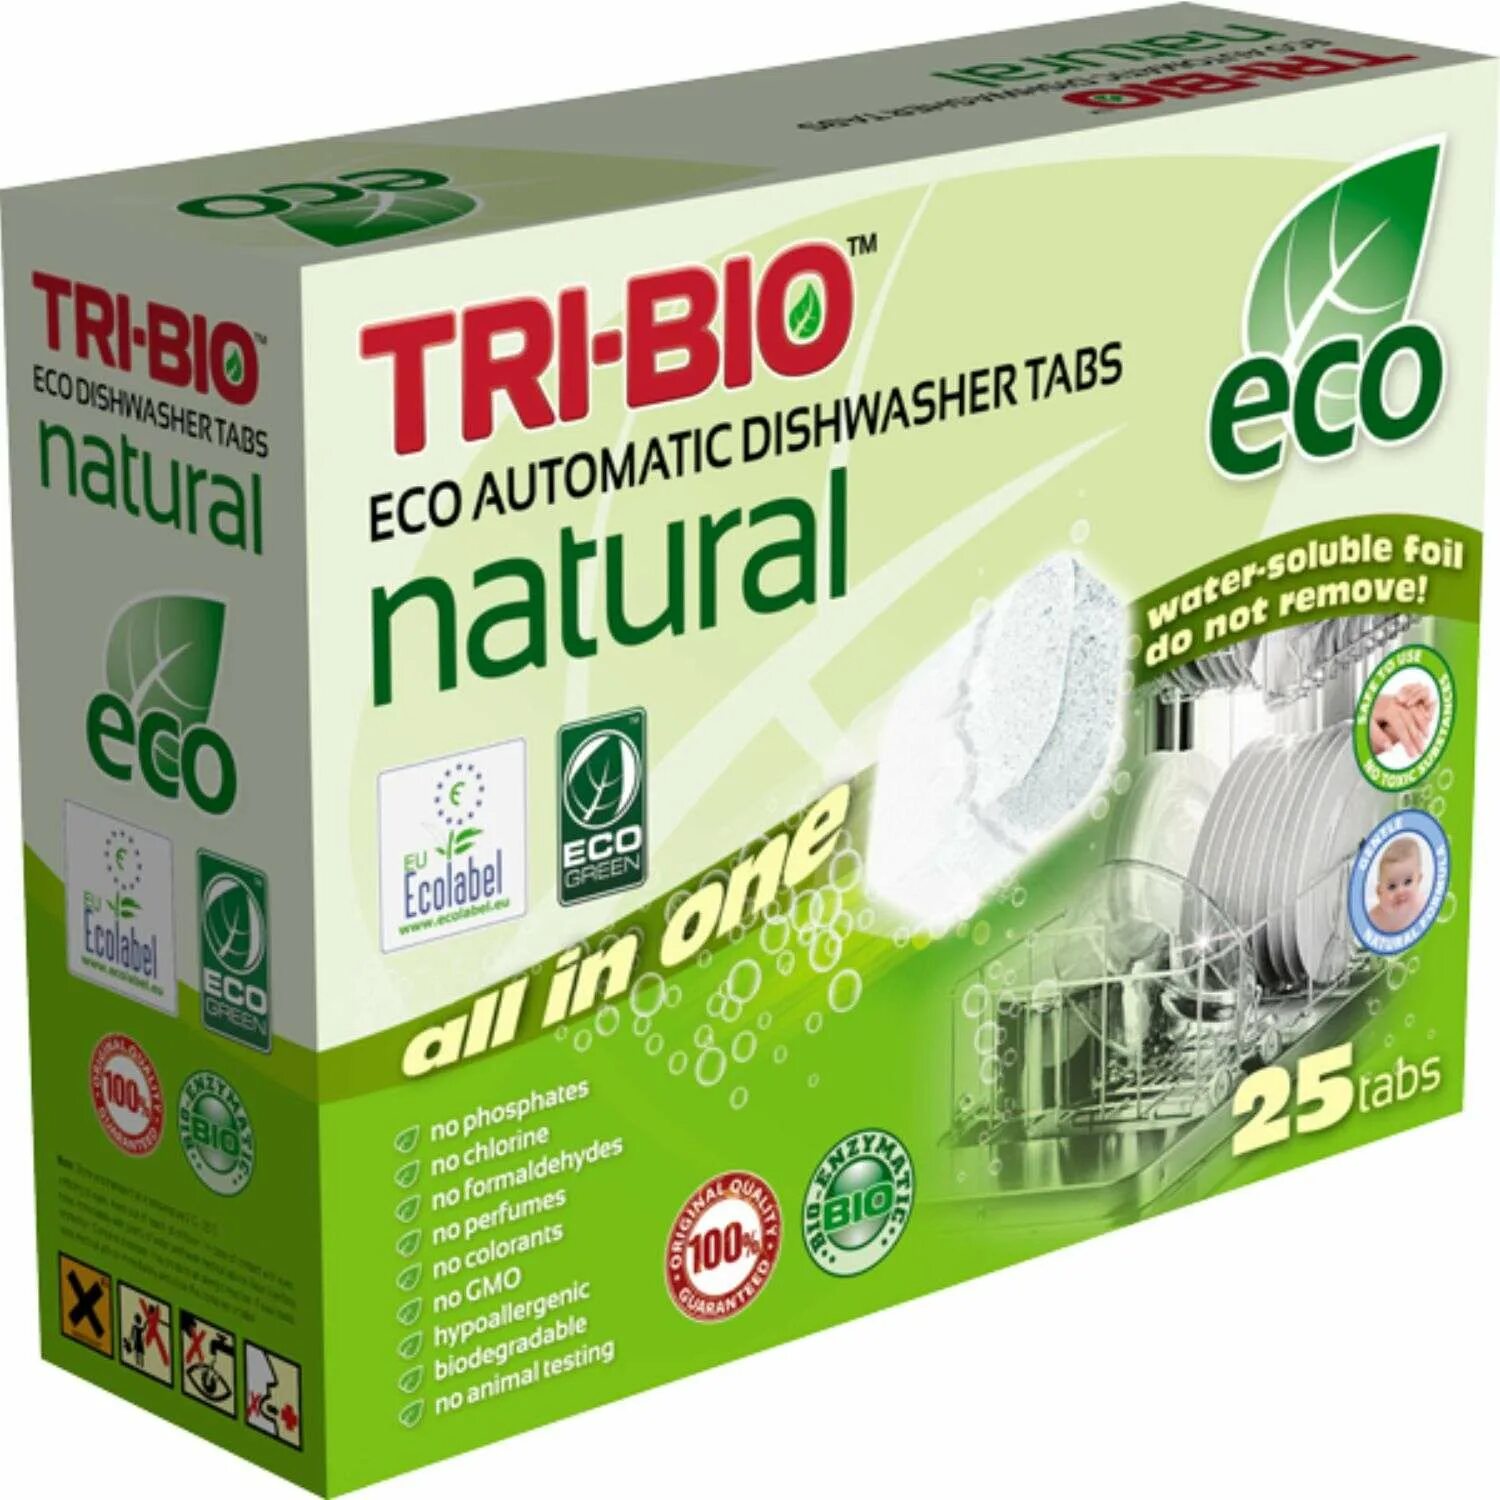 Eco natural. Экологичные таблетки "bioretto" Mini для посудомоечных машин, 28шт, Bio-103. Экологические таблетки для посудомоечной машины. Таблетки для посудомоечной машины ЕСО. Таблетки для посудомоечной машины био.